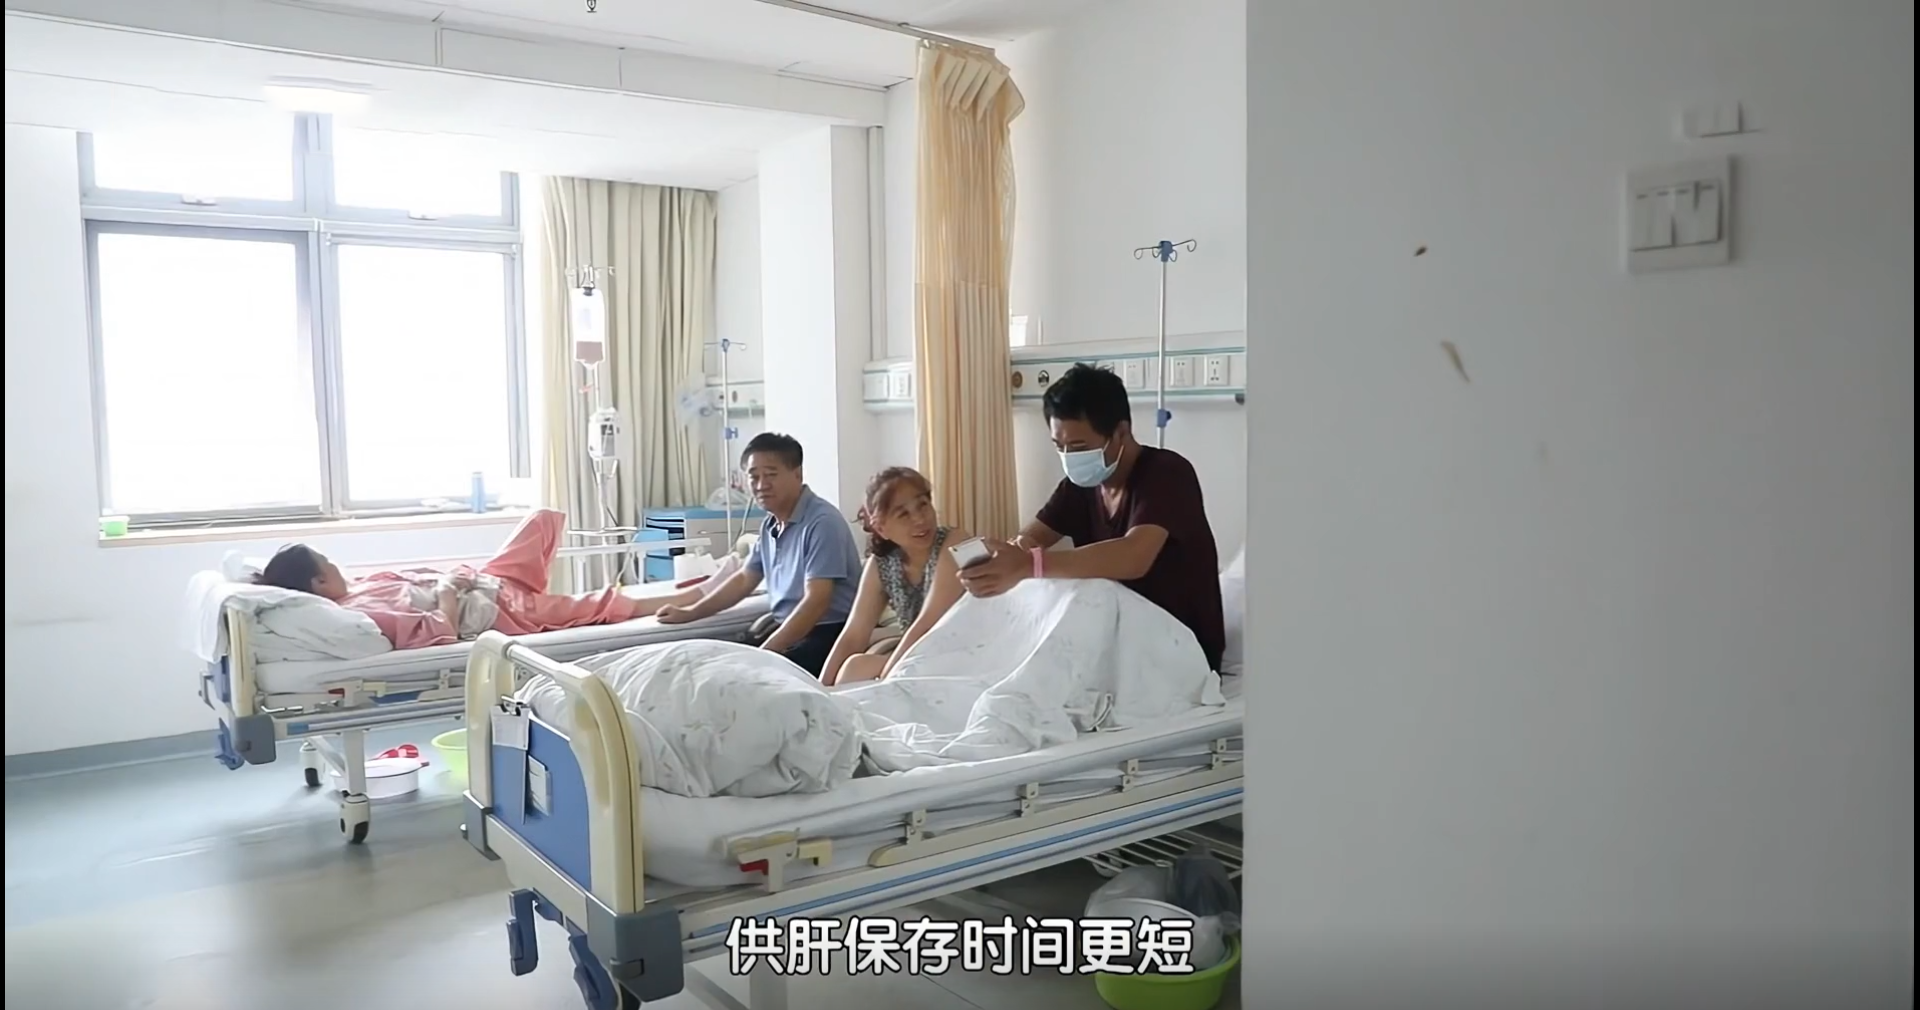 2018年，内蒙古一父亲身患绝症生命垂危，独生子力排众议割肝救父